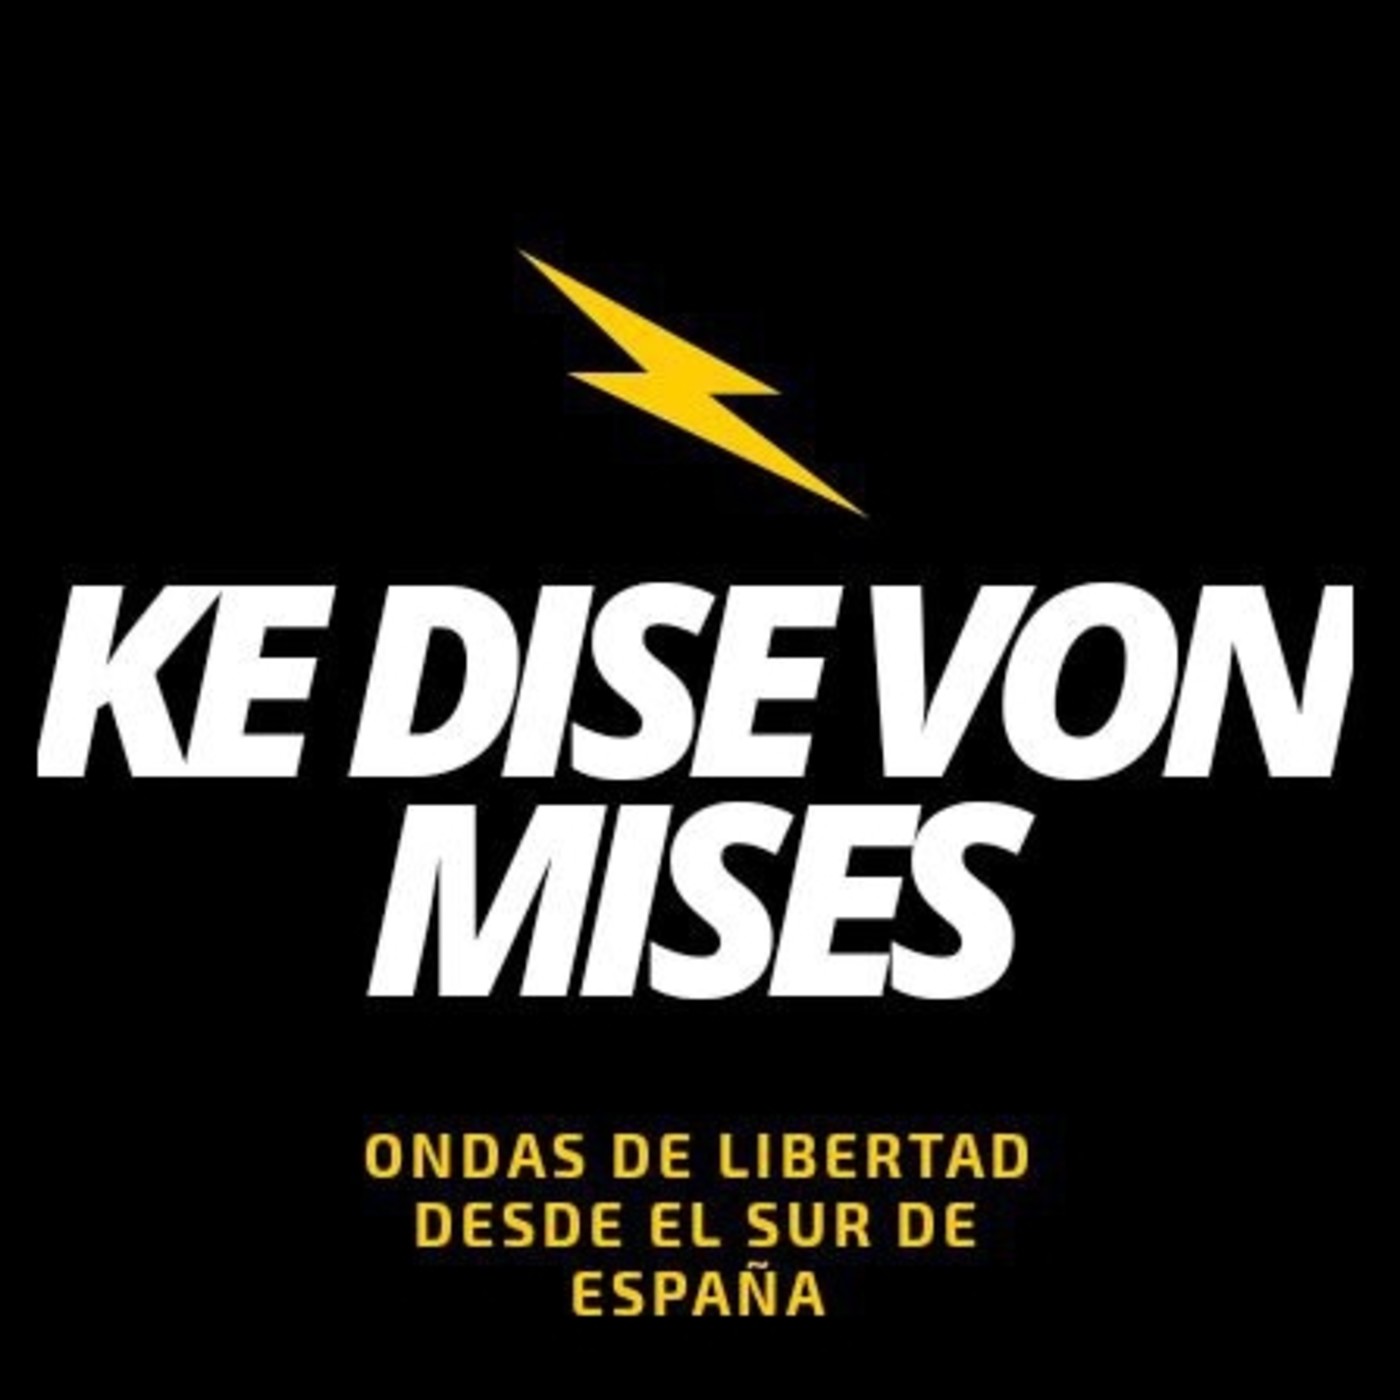 ¿Ké dise Von Mises?